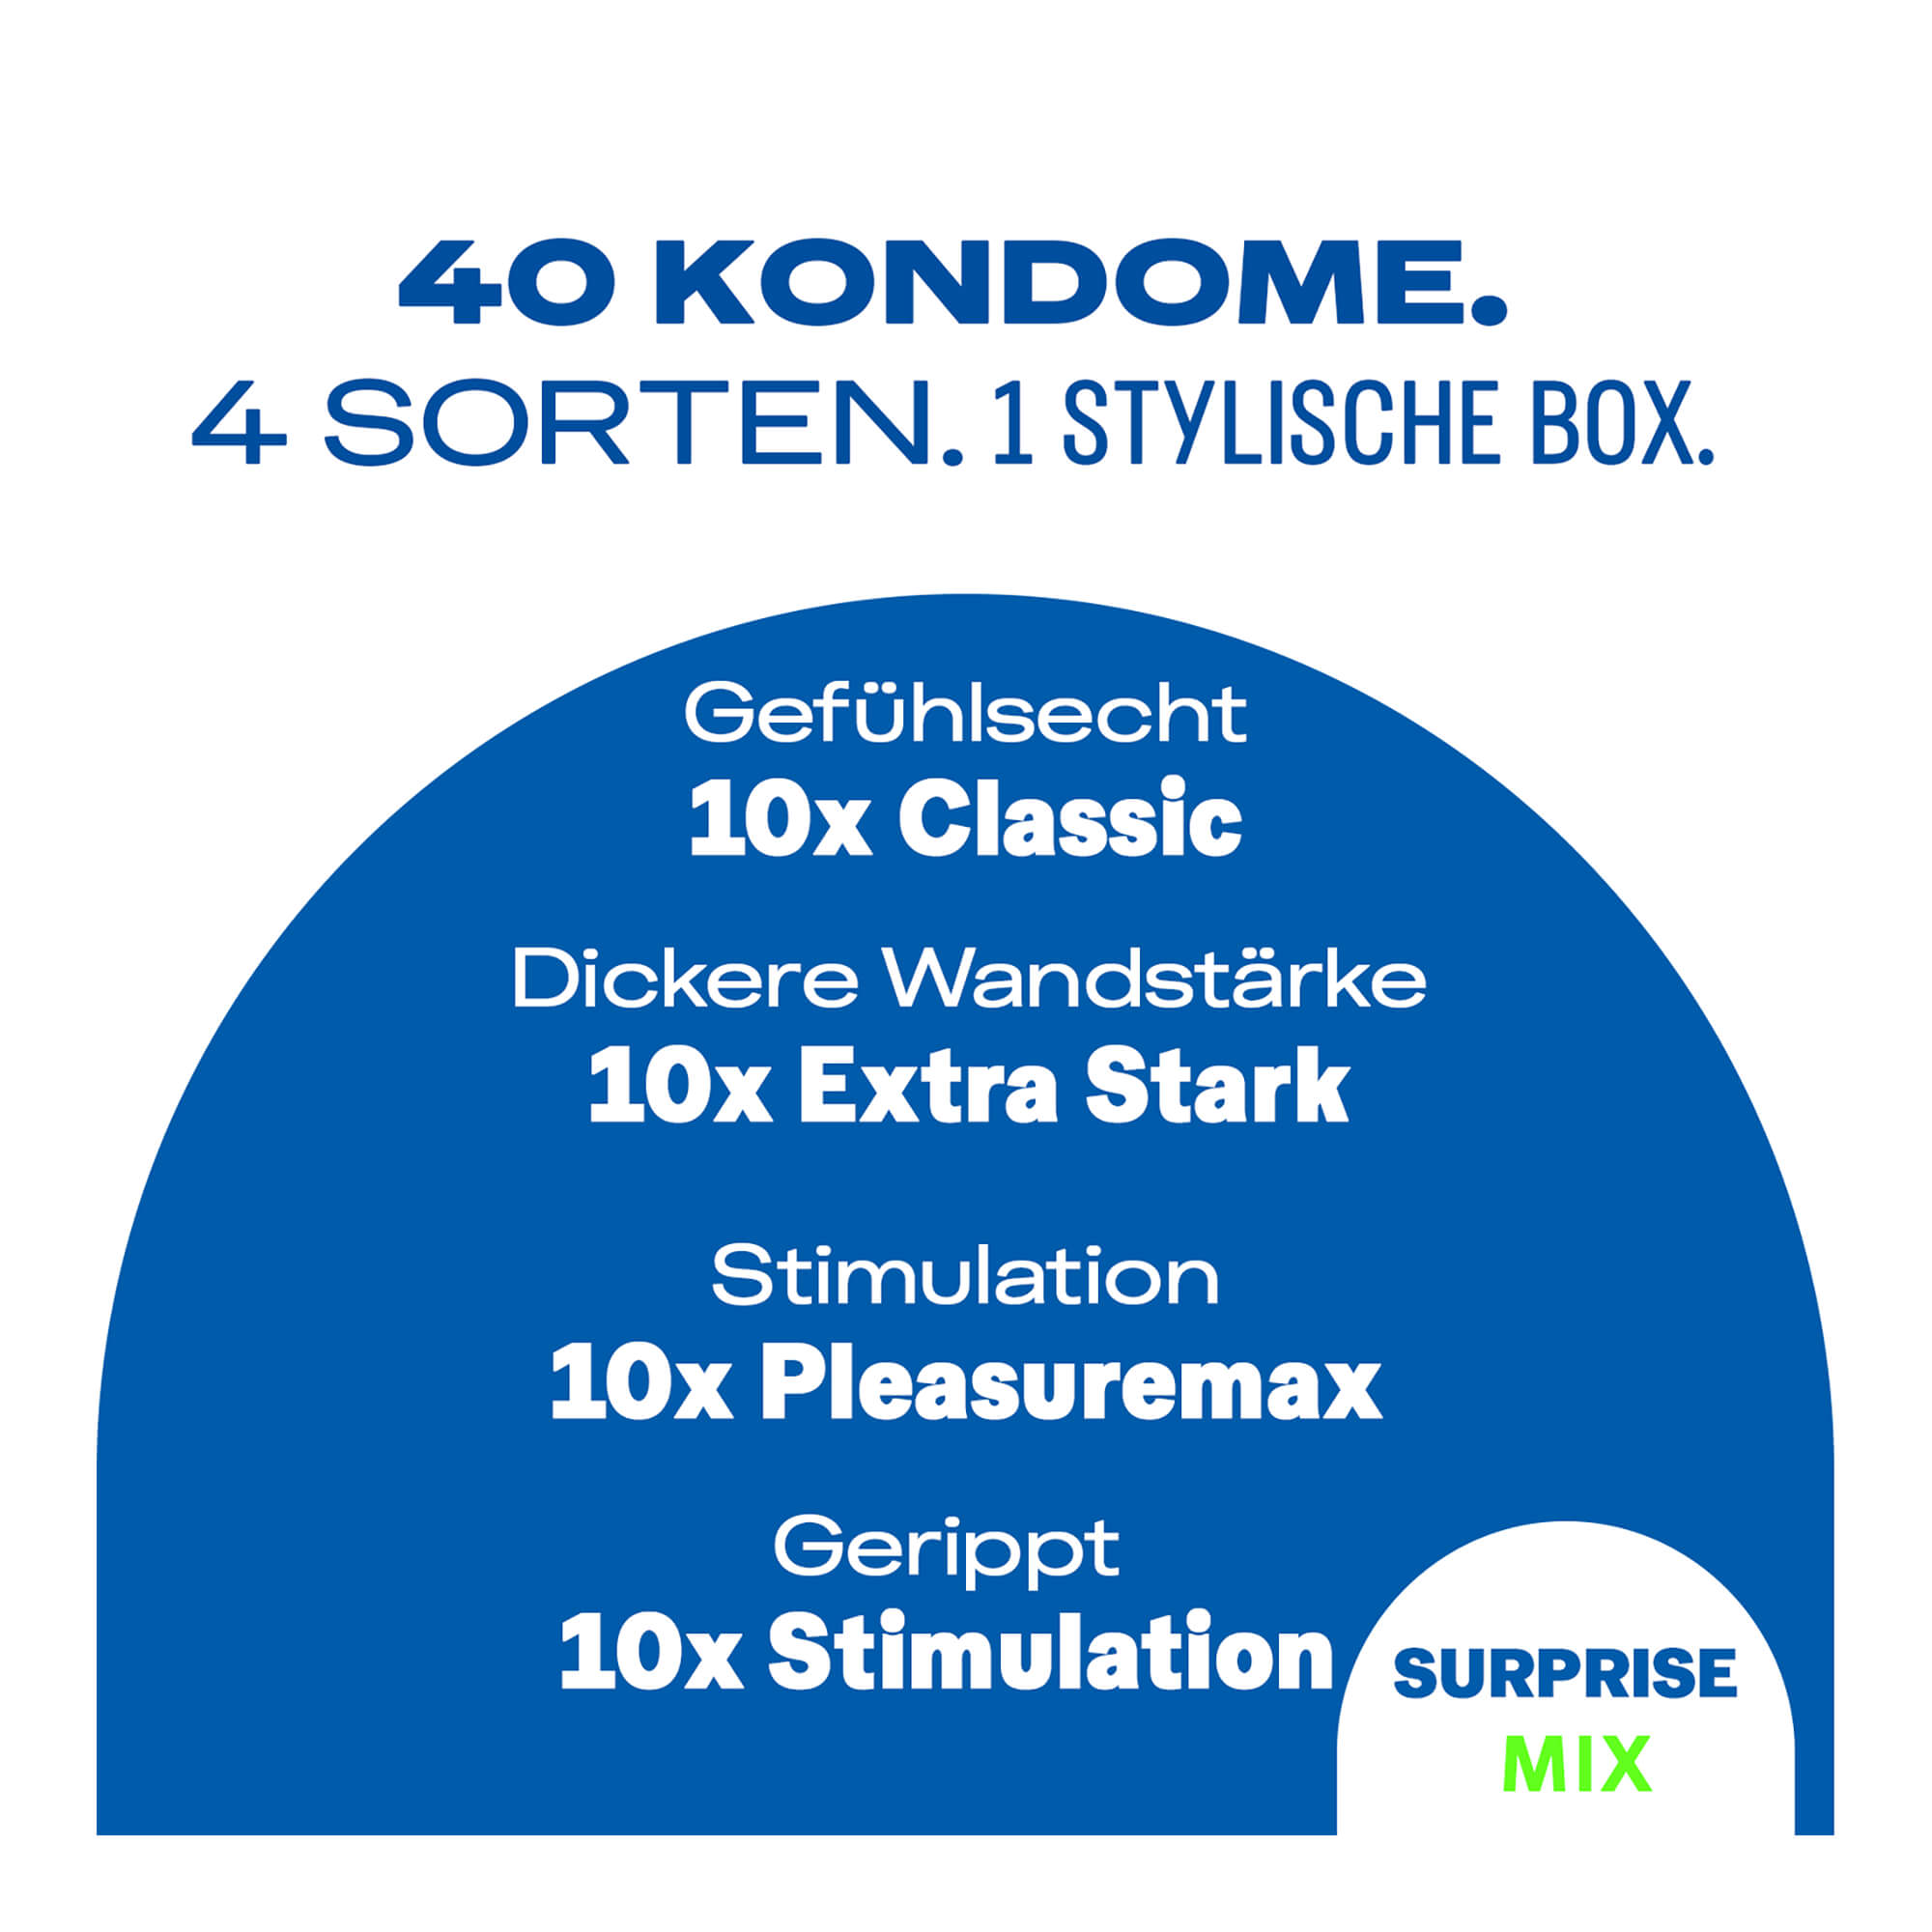 Durex Surprise me Mix Kondome